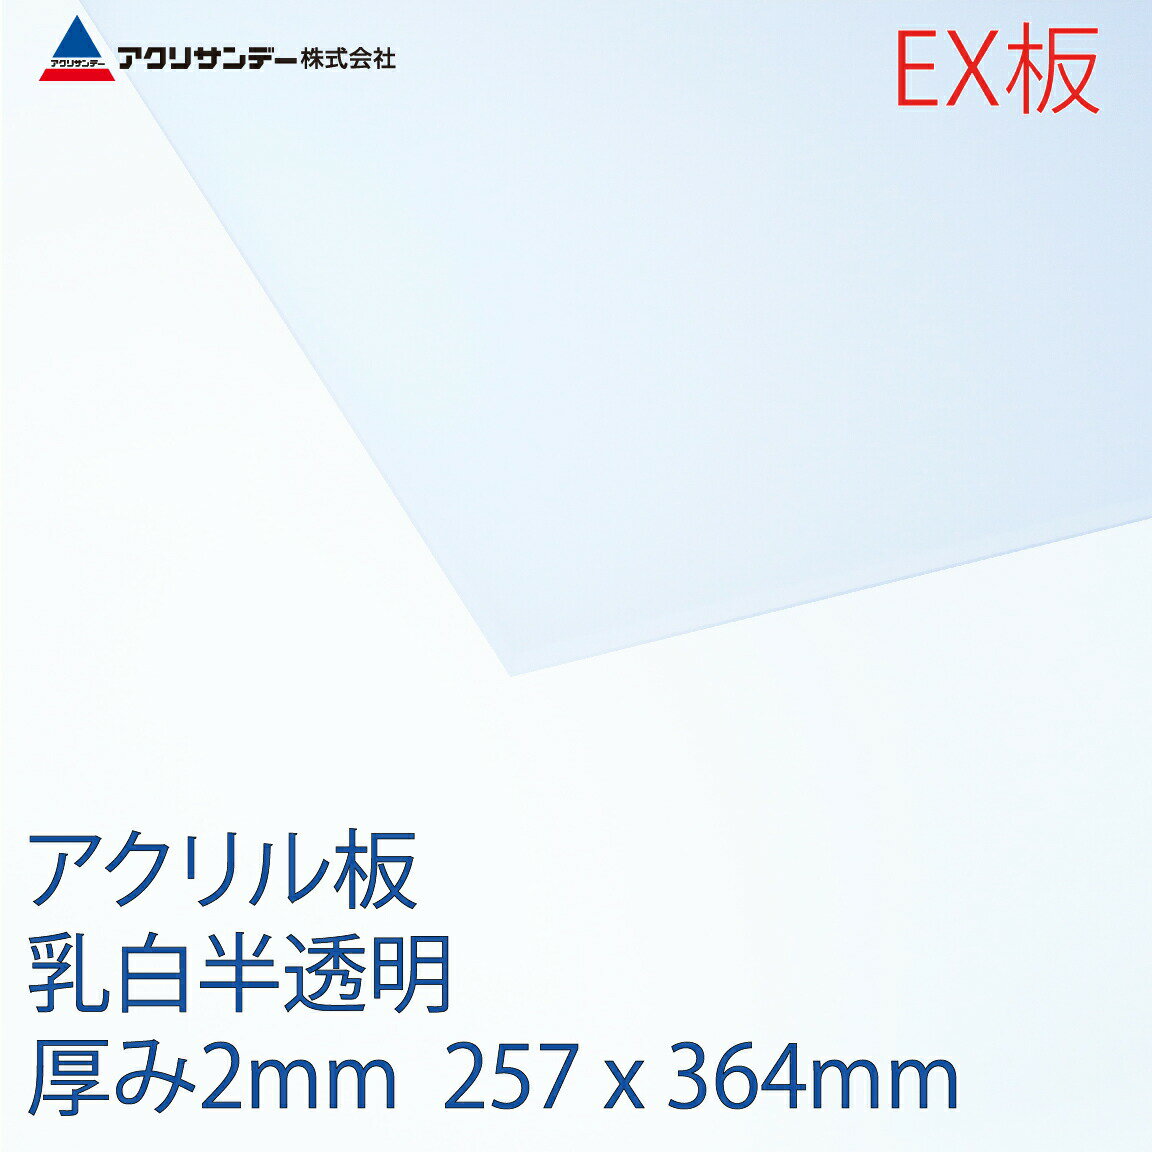 →アクリル(押出グレード) 乳白半透明(2mm厚)の一覧を見る 商品説明 製品名 アクリサンデーEX板 B4サイズ 素材名 アクリル樹脂（押出グレード） 色(色番号) 乳白 半透明（EX432） サイズ 257×364(mm)（寸法誤差 ±0.5mm） 厚み 2mm（許容差 ±0.2mm） 重さ 223g 全光線透過率・反射率 透過率：58％　反射率：40％ 連続使用温度 約－40～70℃ 比重 1.19 JAN 4953463655156 ご注意 ※比重は水を1とした時の数値です。 ※火気の近くで使用しないでください。 ※ガラスクリーナー、シンナー、アルコール類などの有機溶剤は絶対に使用しないでください。 ※温度変化（±20℃）によって1mに対し約1.4mmの膨張、収縮があります。 ※湿度変化によってノビ、反りがあります。(吸水率0.3%)アクリルEX板 (EX板) 従来からの押し出し板と比較して加熱収縮や表面の歪みが少なく、加工性に優れています。 アクリル板の特性 ■水晶の透明性ガラスよりも透明性の高い素材です。 「透視歪み」が少ない為、影像がはっきりと見通せます。 ■美しい光沢鏡のような平滑性を持ち、水晶のように透き通った美しさがあります。 ■軽くて強靭アクリサンデー板の比重(1.19)はガラスの約半分で、強さは普通ガラスの10数倍です。割れにくく、万一破損してもガラスのように破片が飛び散ることはありません。 連続キャスト製法で熱・寸法安定性にも優れており、太陽光や風雨による変色、劣化が少ない素材です。 ■加工性切断、穴あけ、単純な曲げまで比較的容易に加工できます。 また、接着剤による貼り合わせも可能です。 アクリル板の用途 透明度が高く、強く美しく、耐候性に優れているなどの特性から、■看板■水槽■ディスプレイ■照明カバー■パーテーション/間仕切り■棚■ホビー用途などで幅広く活用されています。